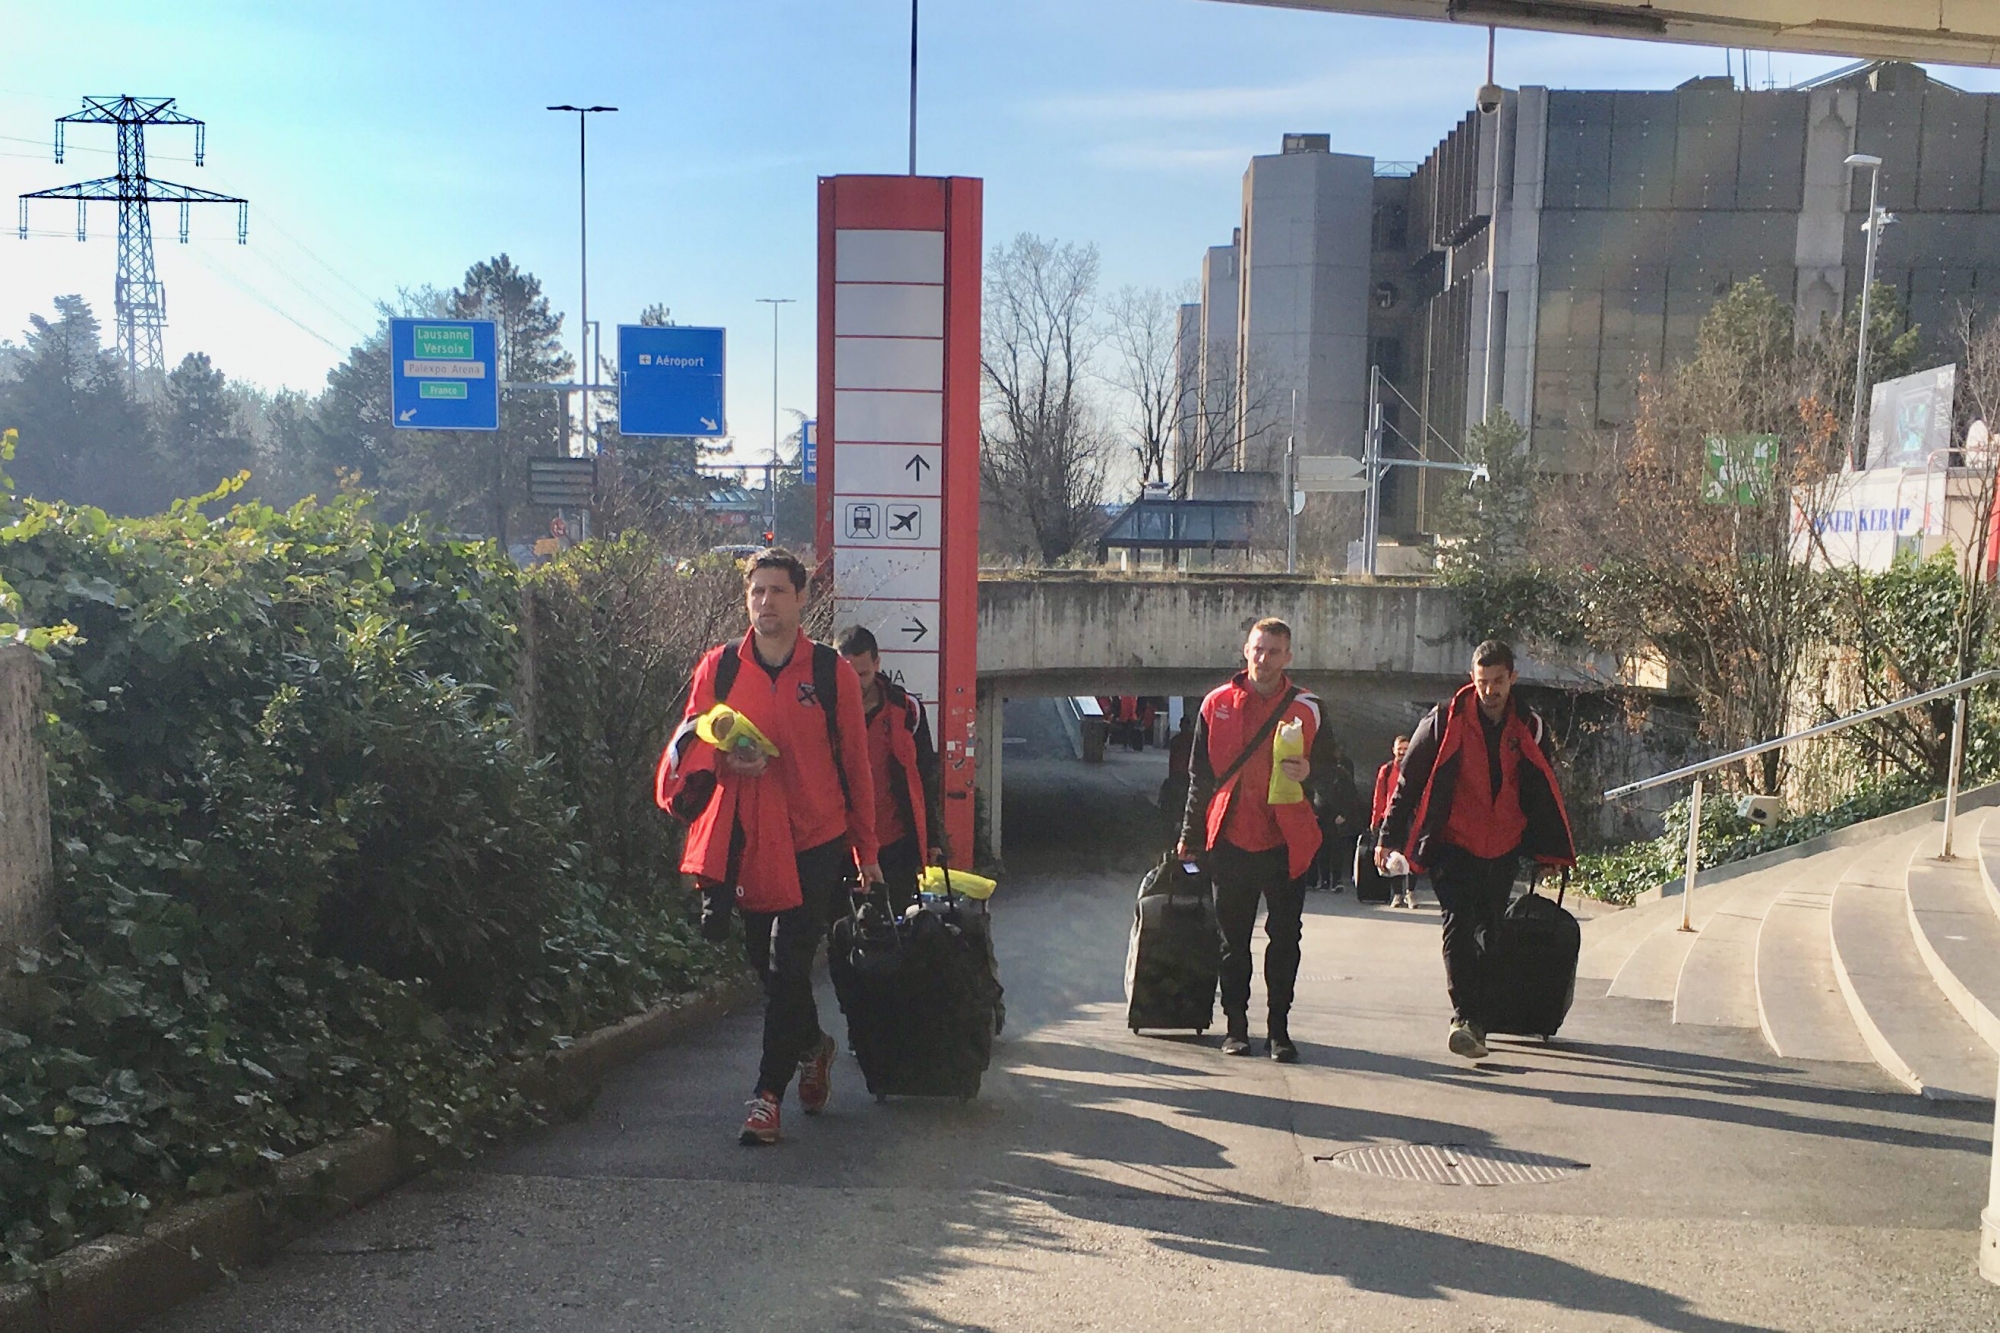 La délégation xamaxienne a atterri à Genève, en provenance d'Alicante, sans encombre. Elle a ensuite rallié Neuchâtel en car. (Photo CHRISTIAN GALLEY)